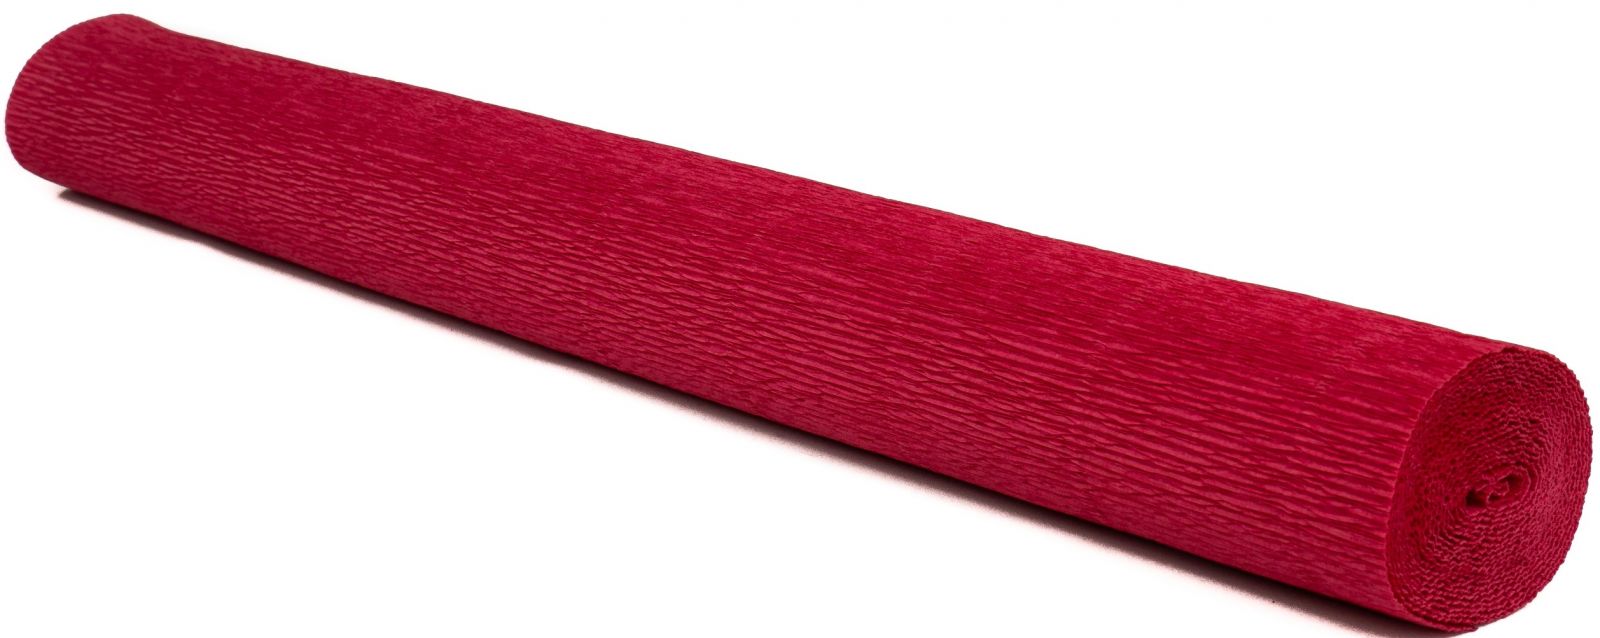 Krepový papír EXTRA pevný 180g, 50x200cm - k výrobě květů a jiné dekorace - Červený korál